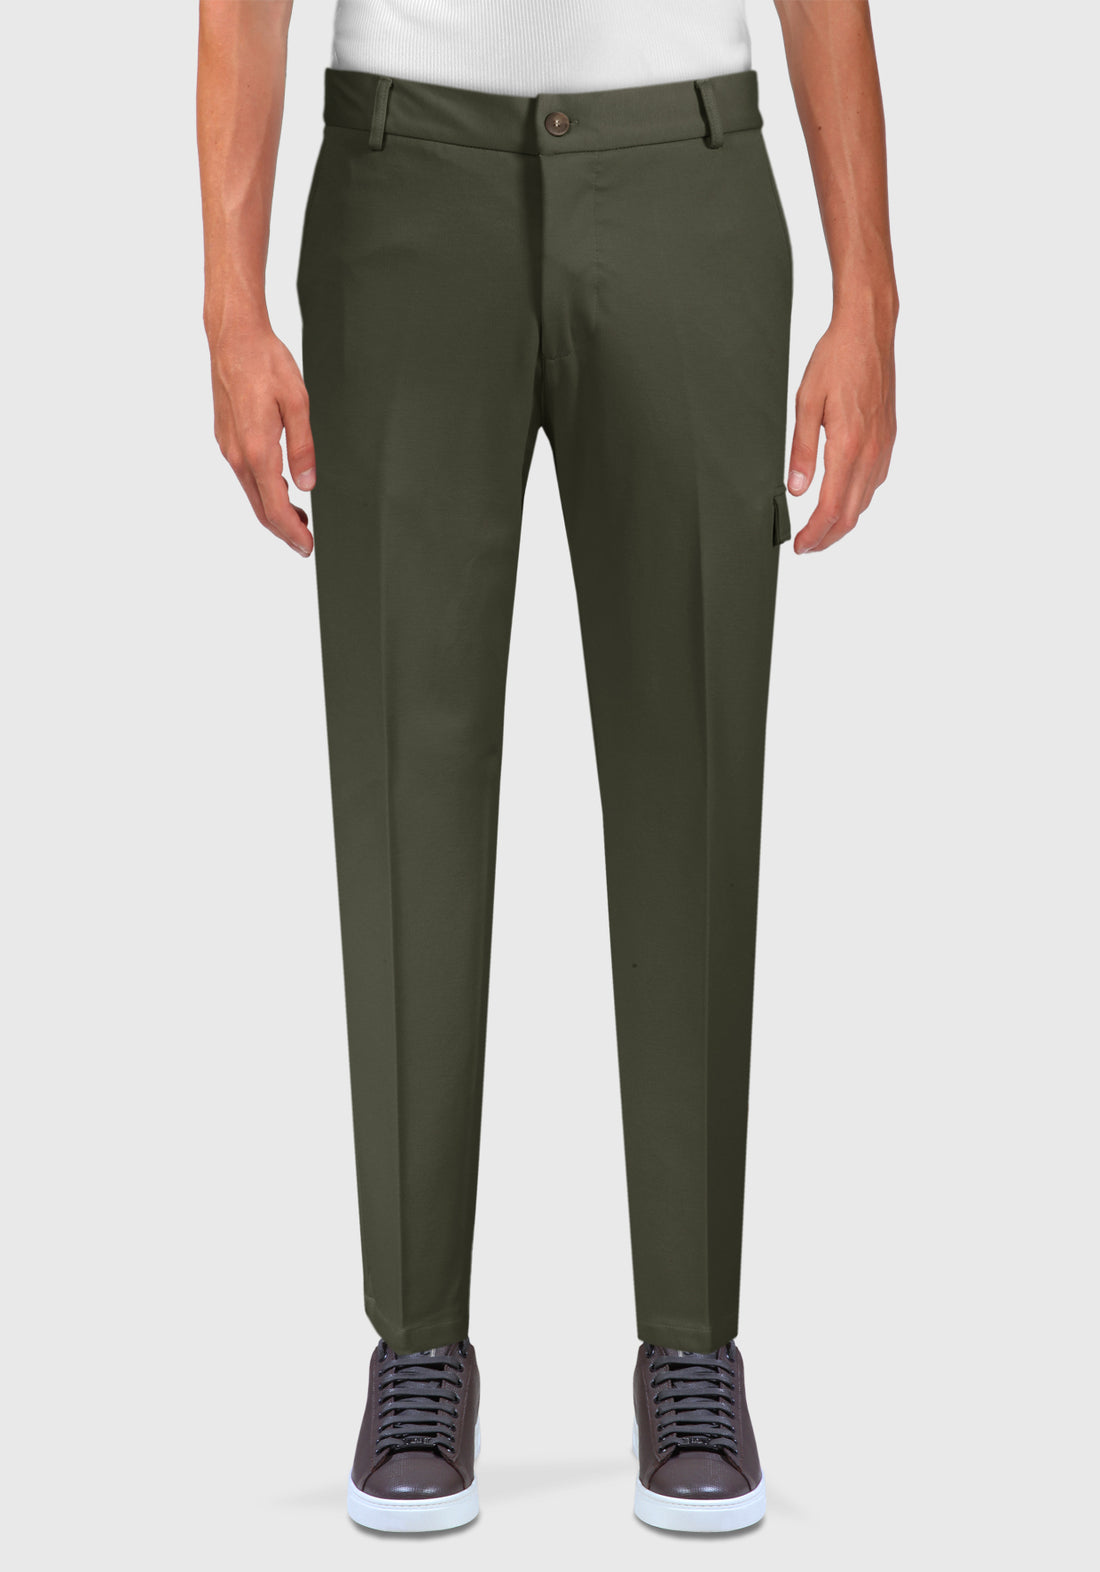 Pantalone con Tasca Laterale - Verde